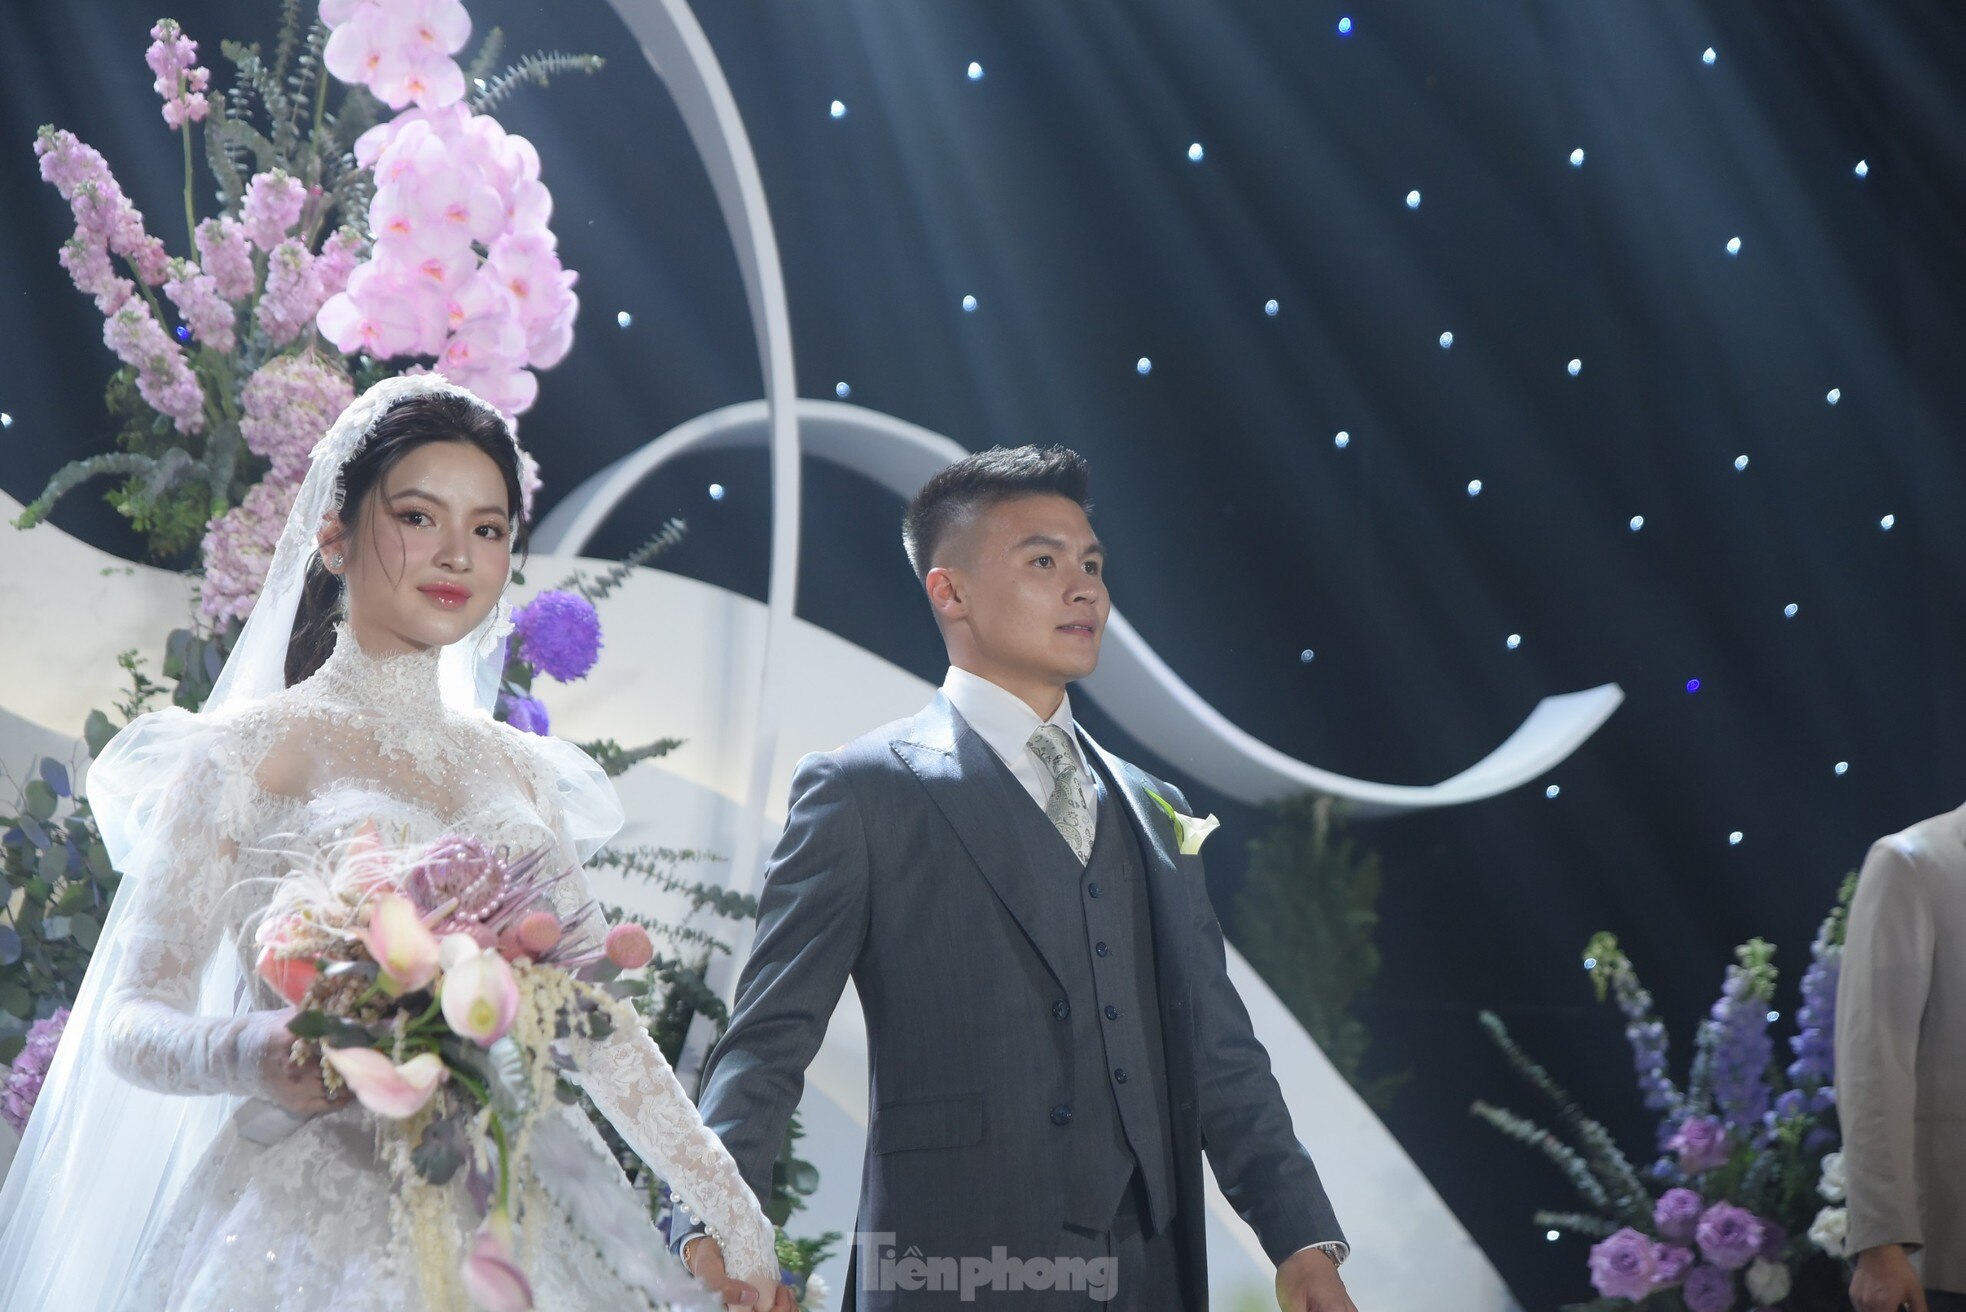 Diện váy cưới cúp ngực 150 triệu đồng, Chu Thanh Huyền rạng ngời bên Quang Hải ảnh 7